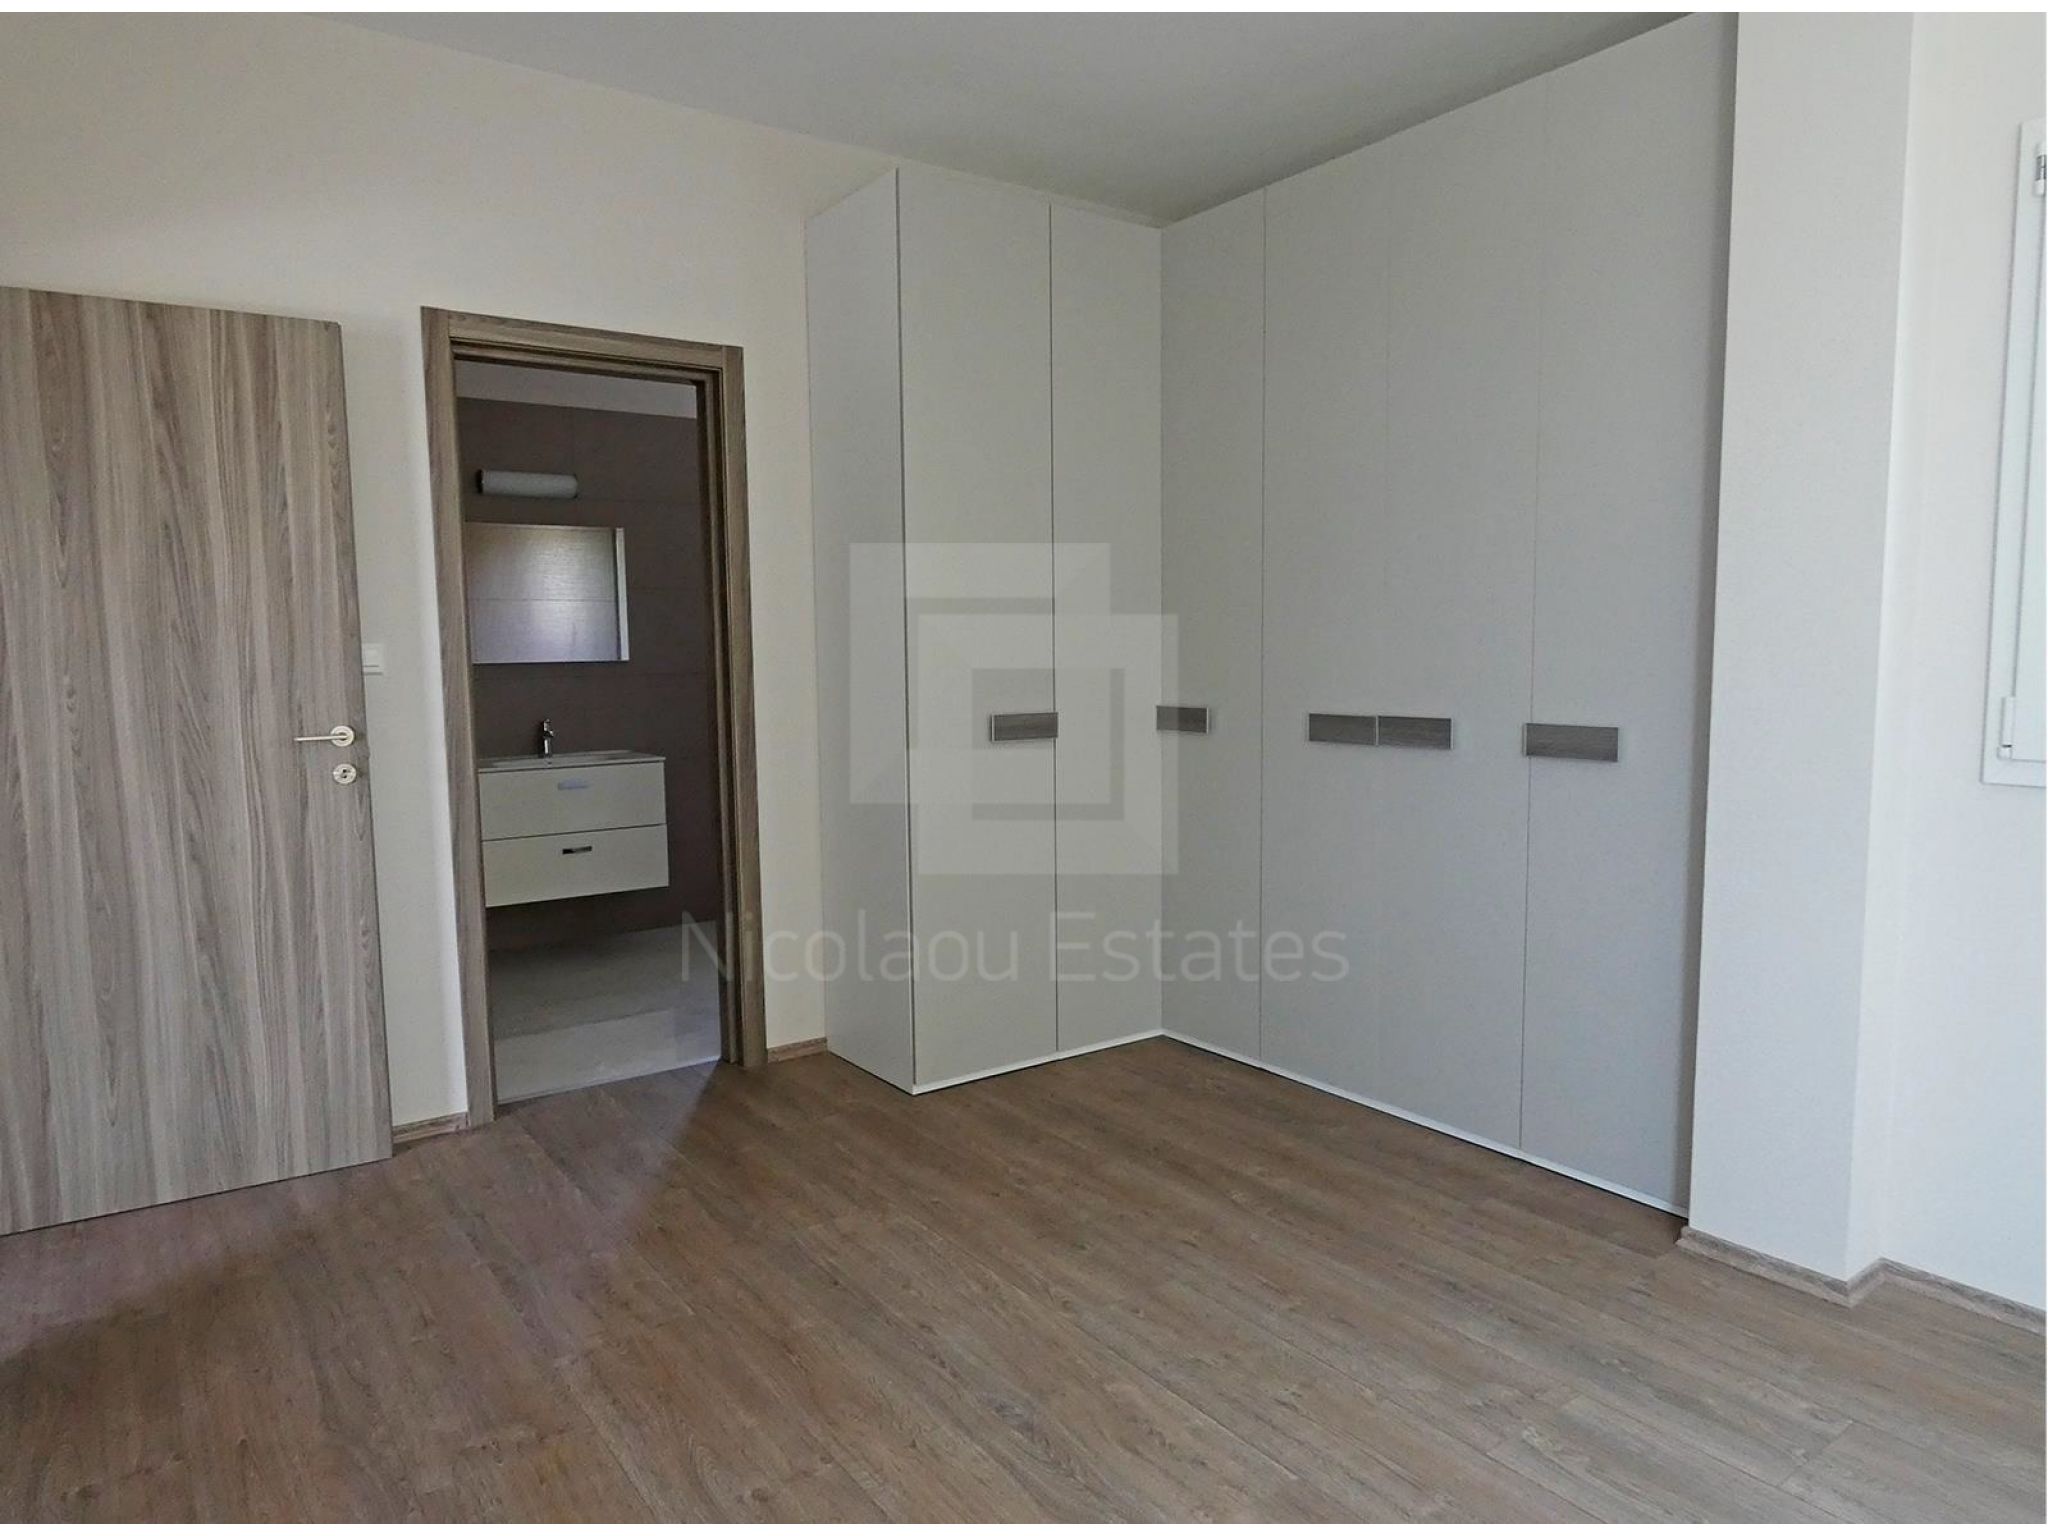 https://www.propertiescy.com/images/uploads/listings/large/12095-1567065347_master-bedroom.jpg